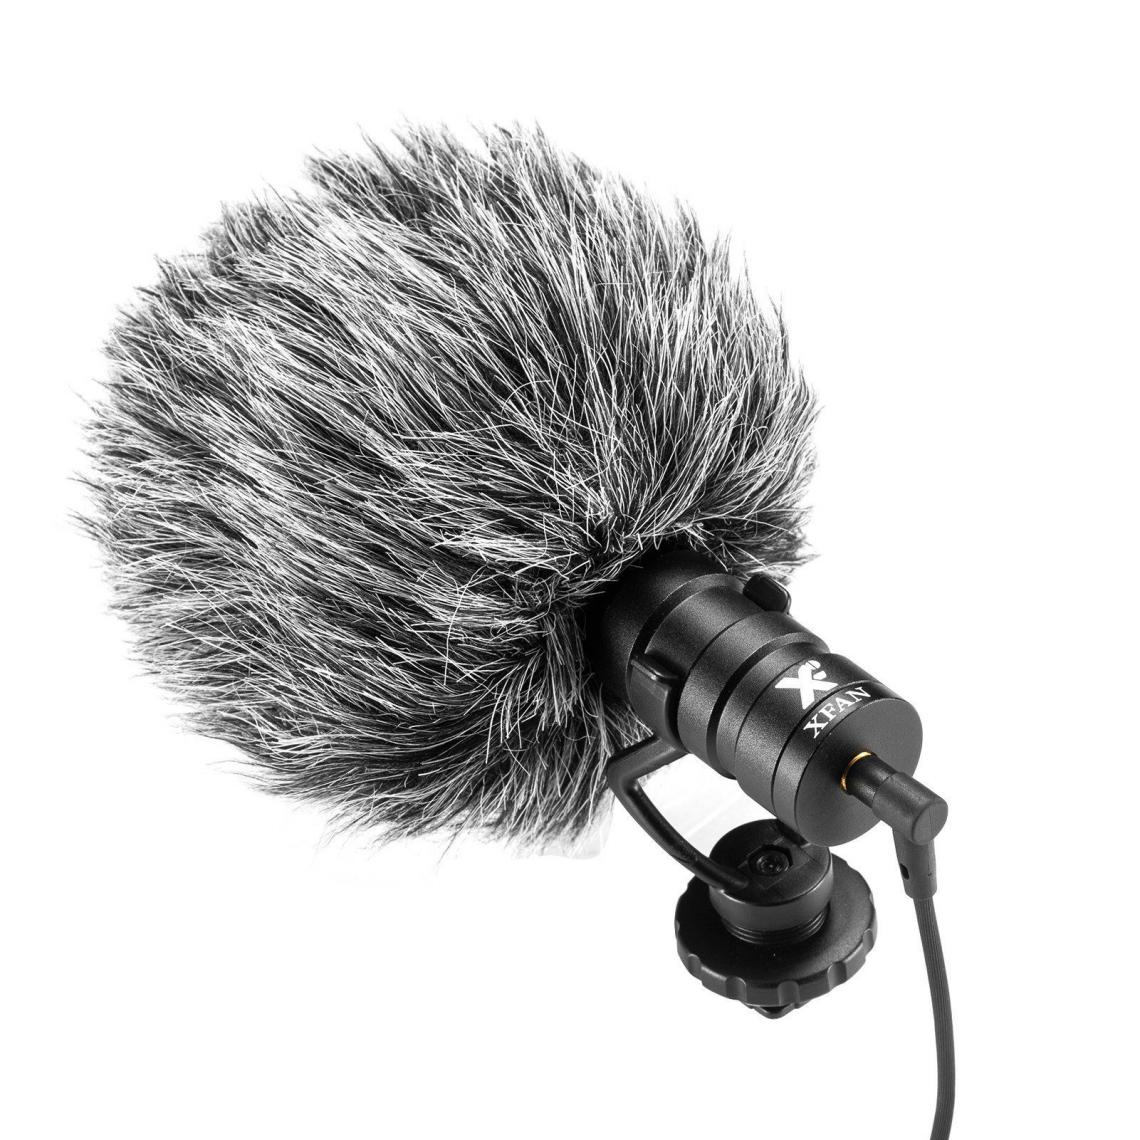 Justgreenbox - Microphone sur la caméra Condensateur cardioïde-directionnel universel Interview Vlogging - T3654657596903 - Micros chant